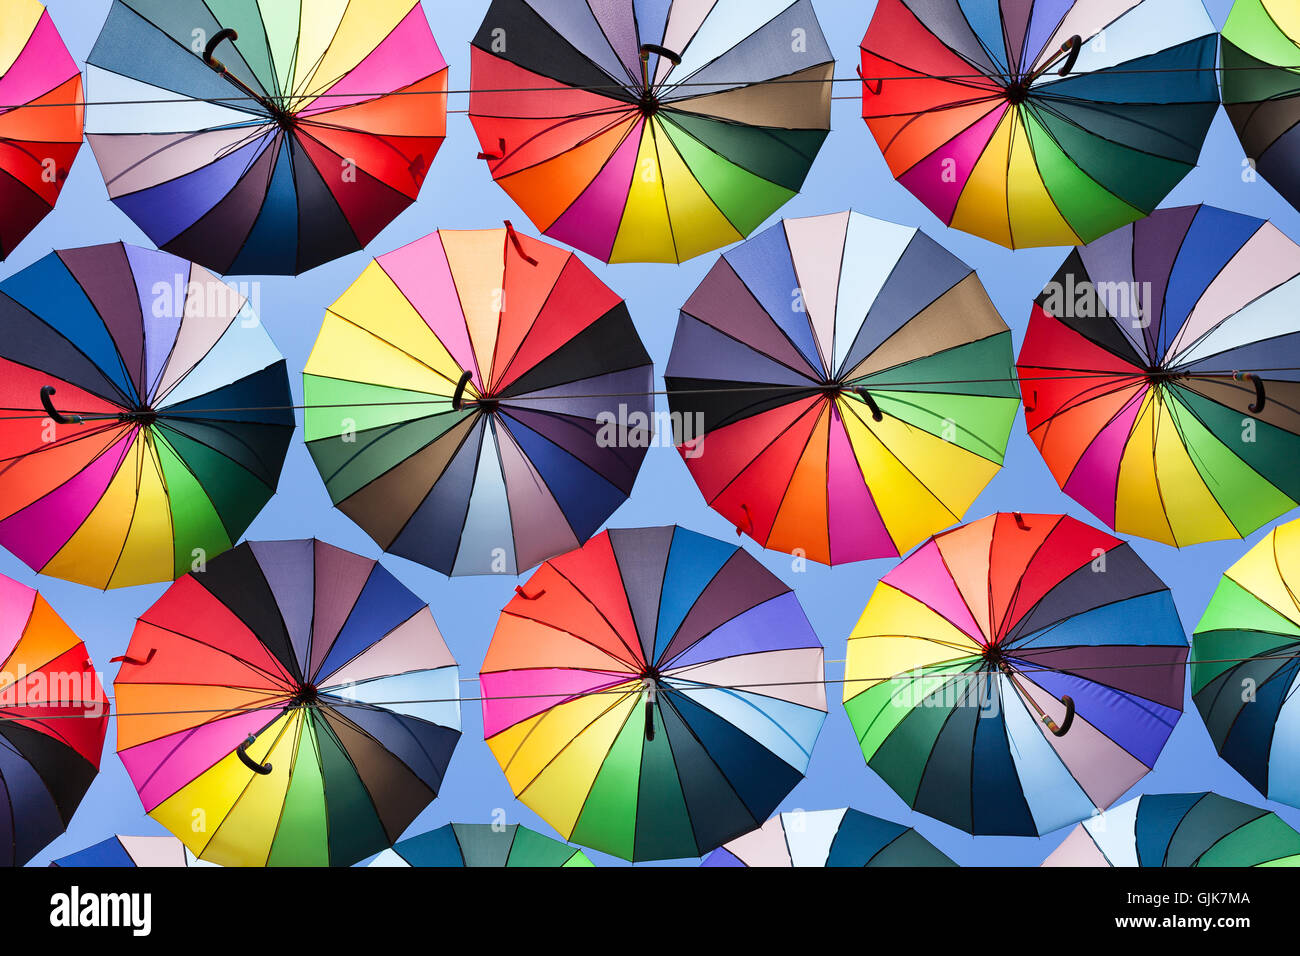 bunten Regenschirm Stockfoto